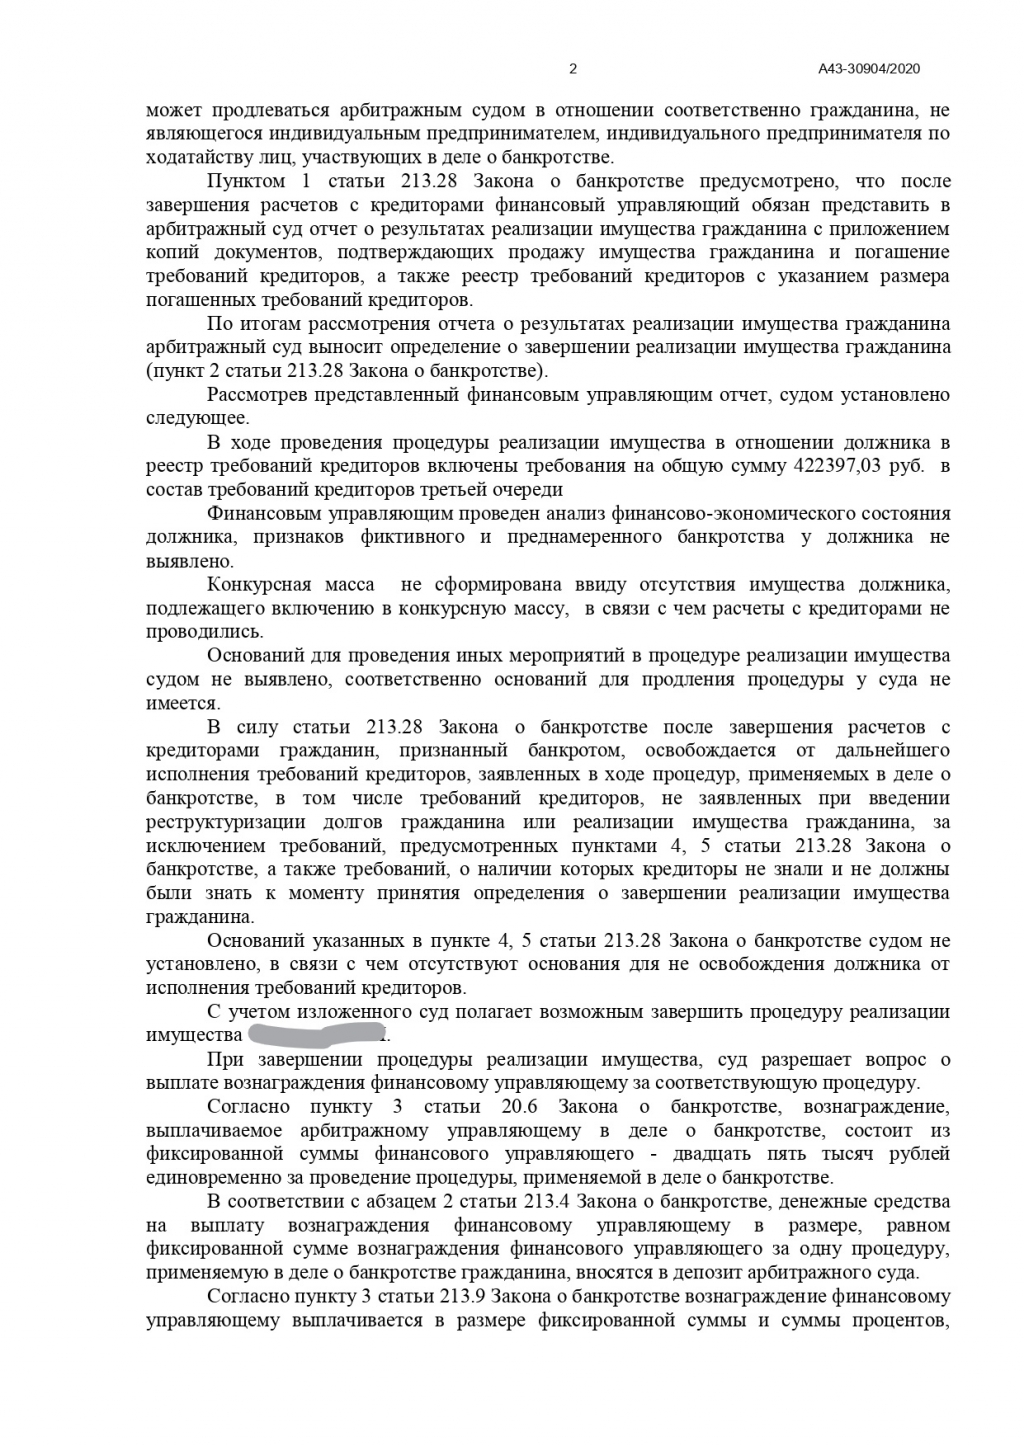 Банкрот Консалт - № дела  А43-30904/2020